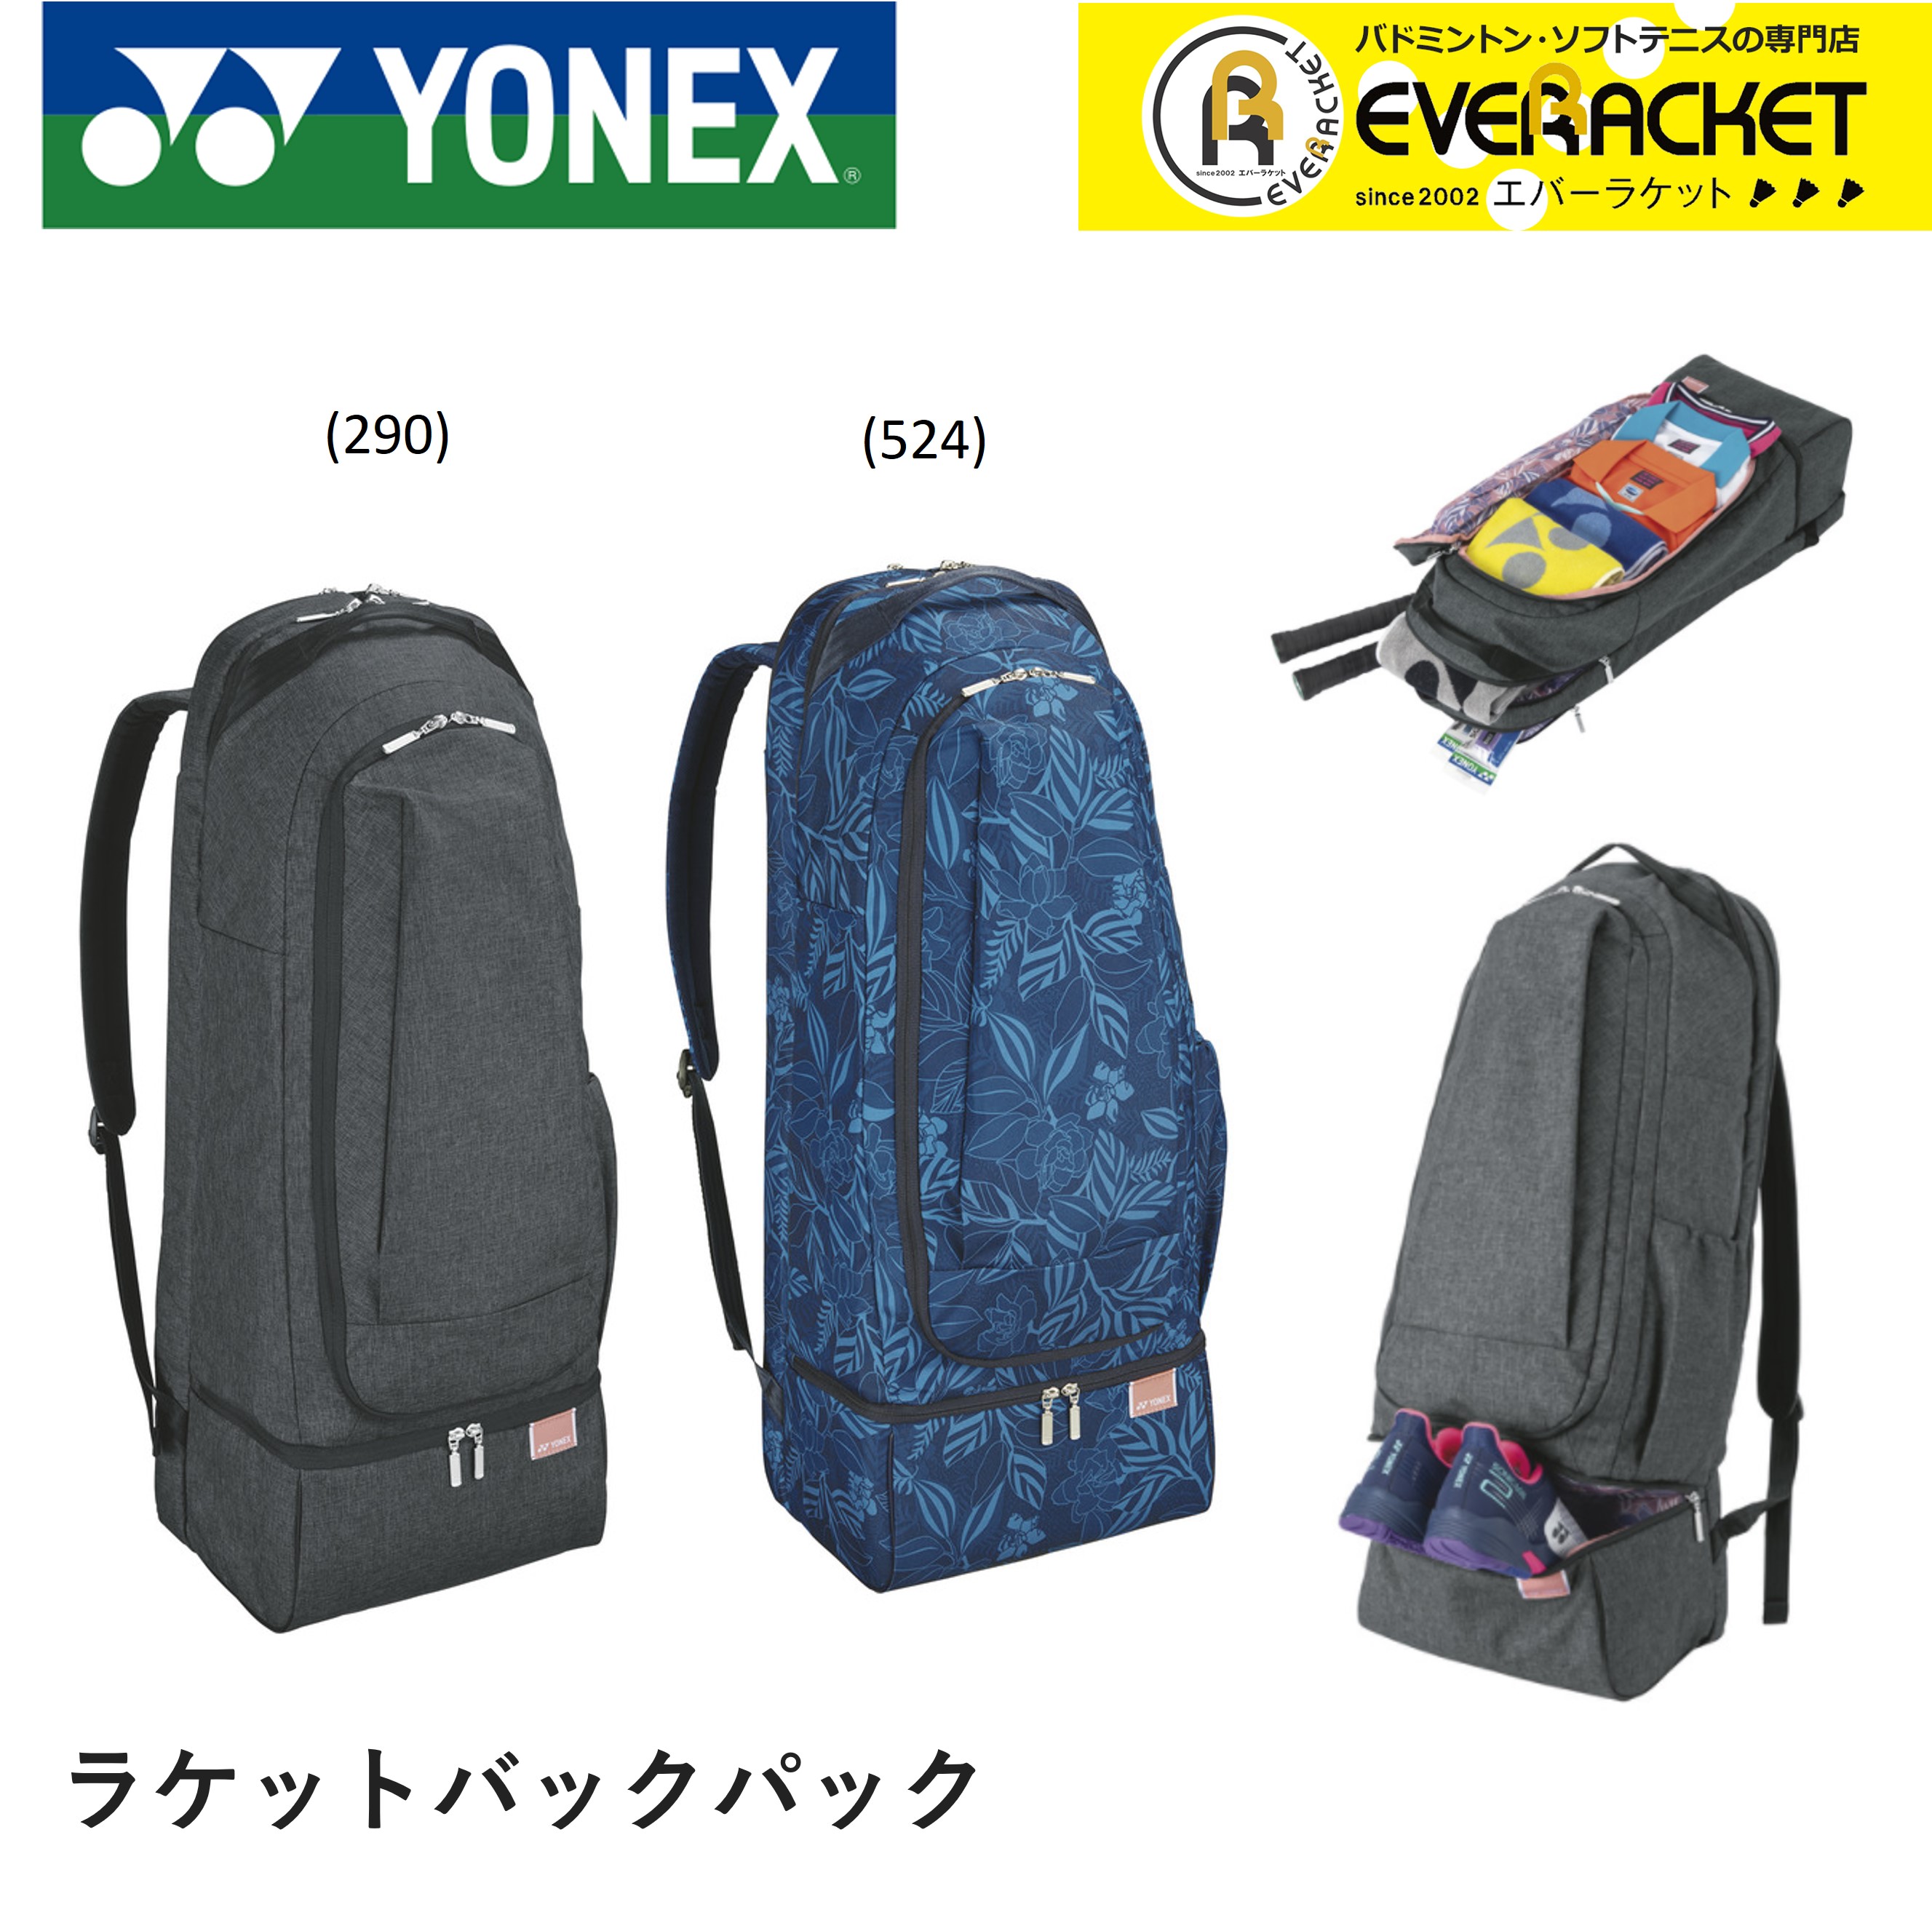 2020年SS【YONEX：ラケットバックパック】 ヨネックス YONEX バッグ ラケットバックパック BAG2069 バドミントン ソフトテニス